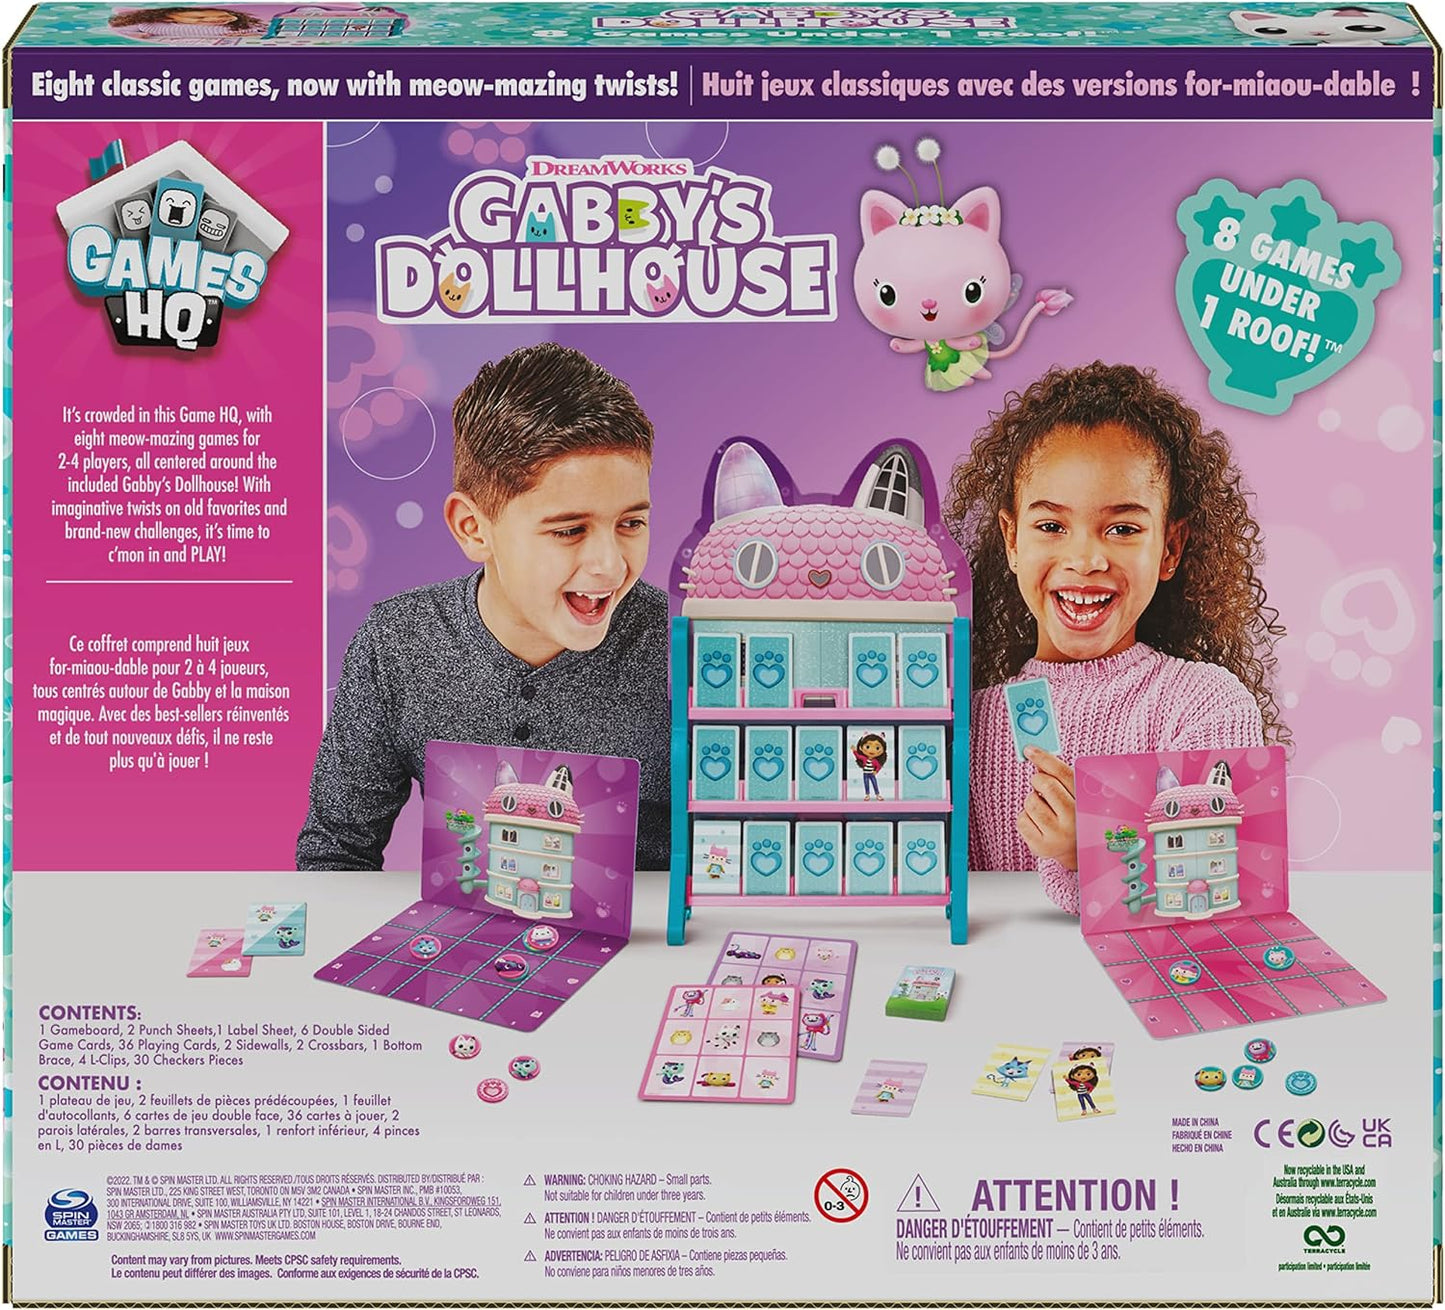 Gabby’s Dollhouse Jogos HQ Damas Tic Tac Toe Memory Match Go Fish Bingo Cards Jogos de tabuleiro Brinquedo Presente Netflix Fontes de festa, para crianças de 4 anos ou mais